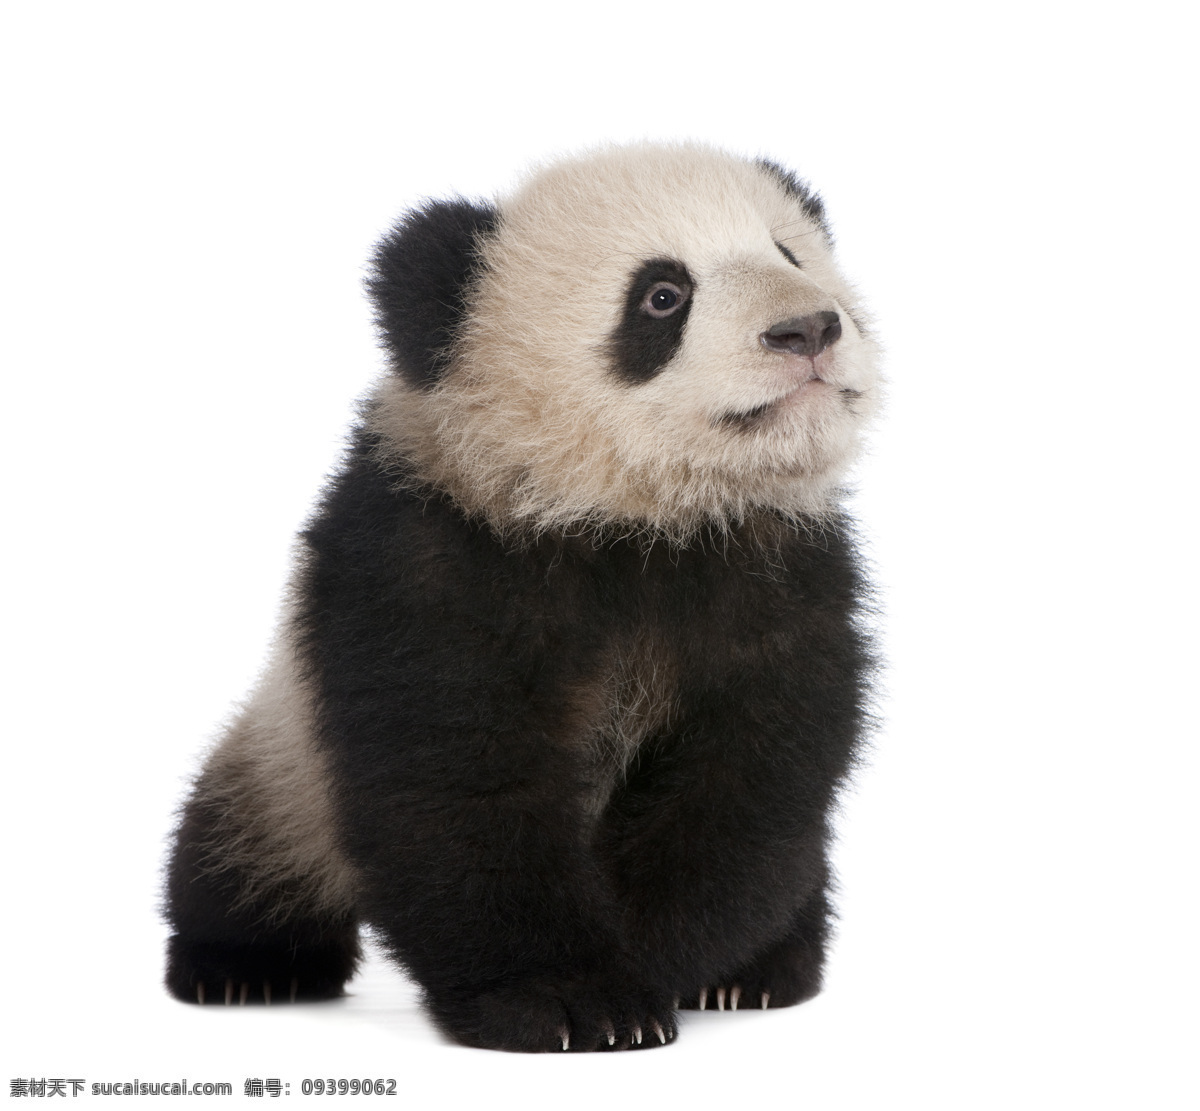 可爱 熊猫 宝宝 小熊猫 熊猫幼崽 熊猫宝宝 国宝 国家保护动物 猫咪图片 生物世界